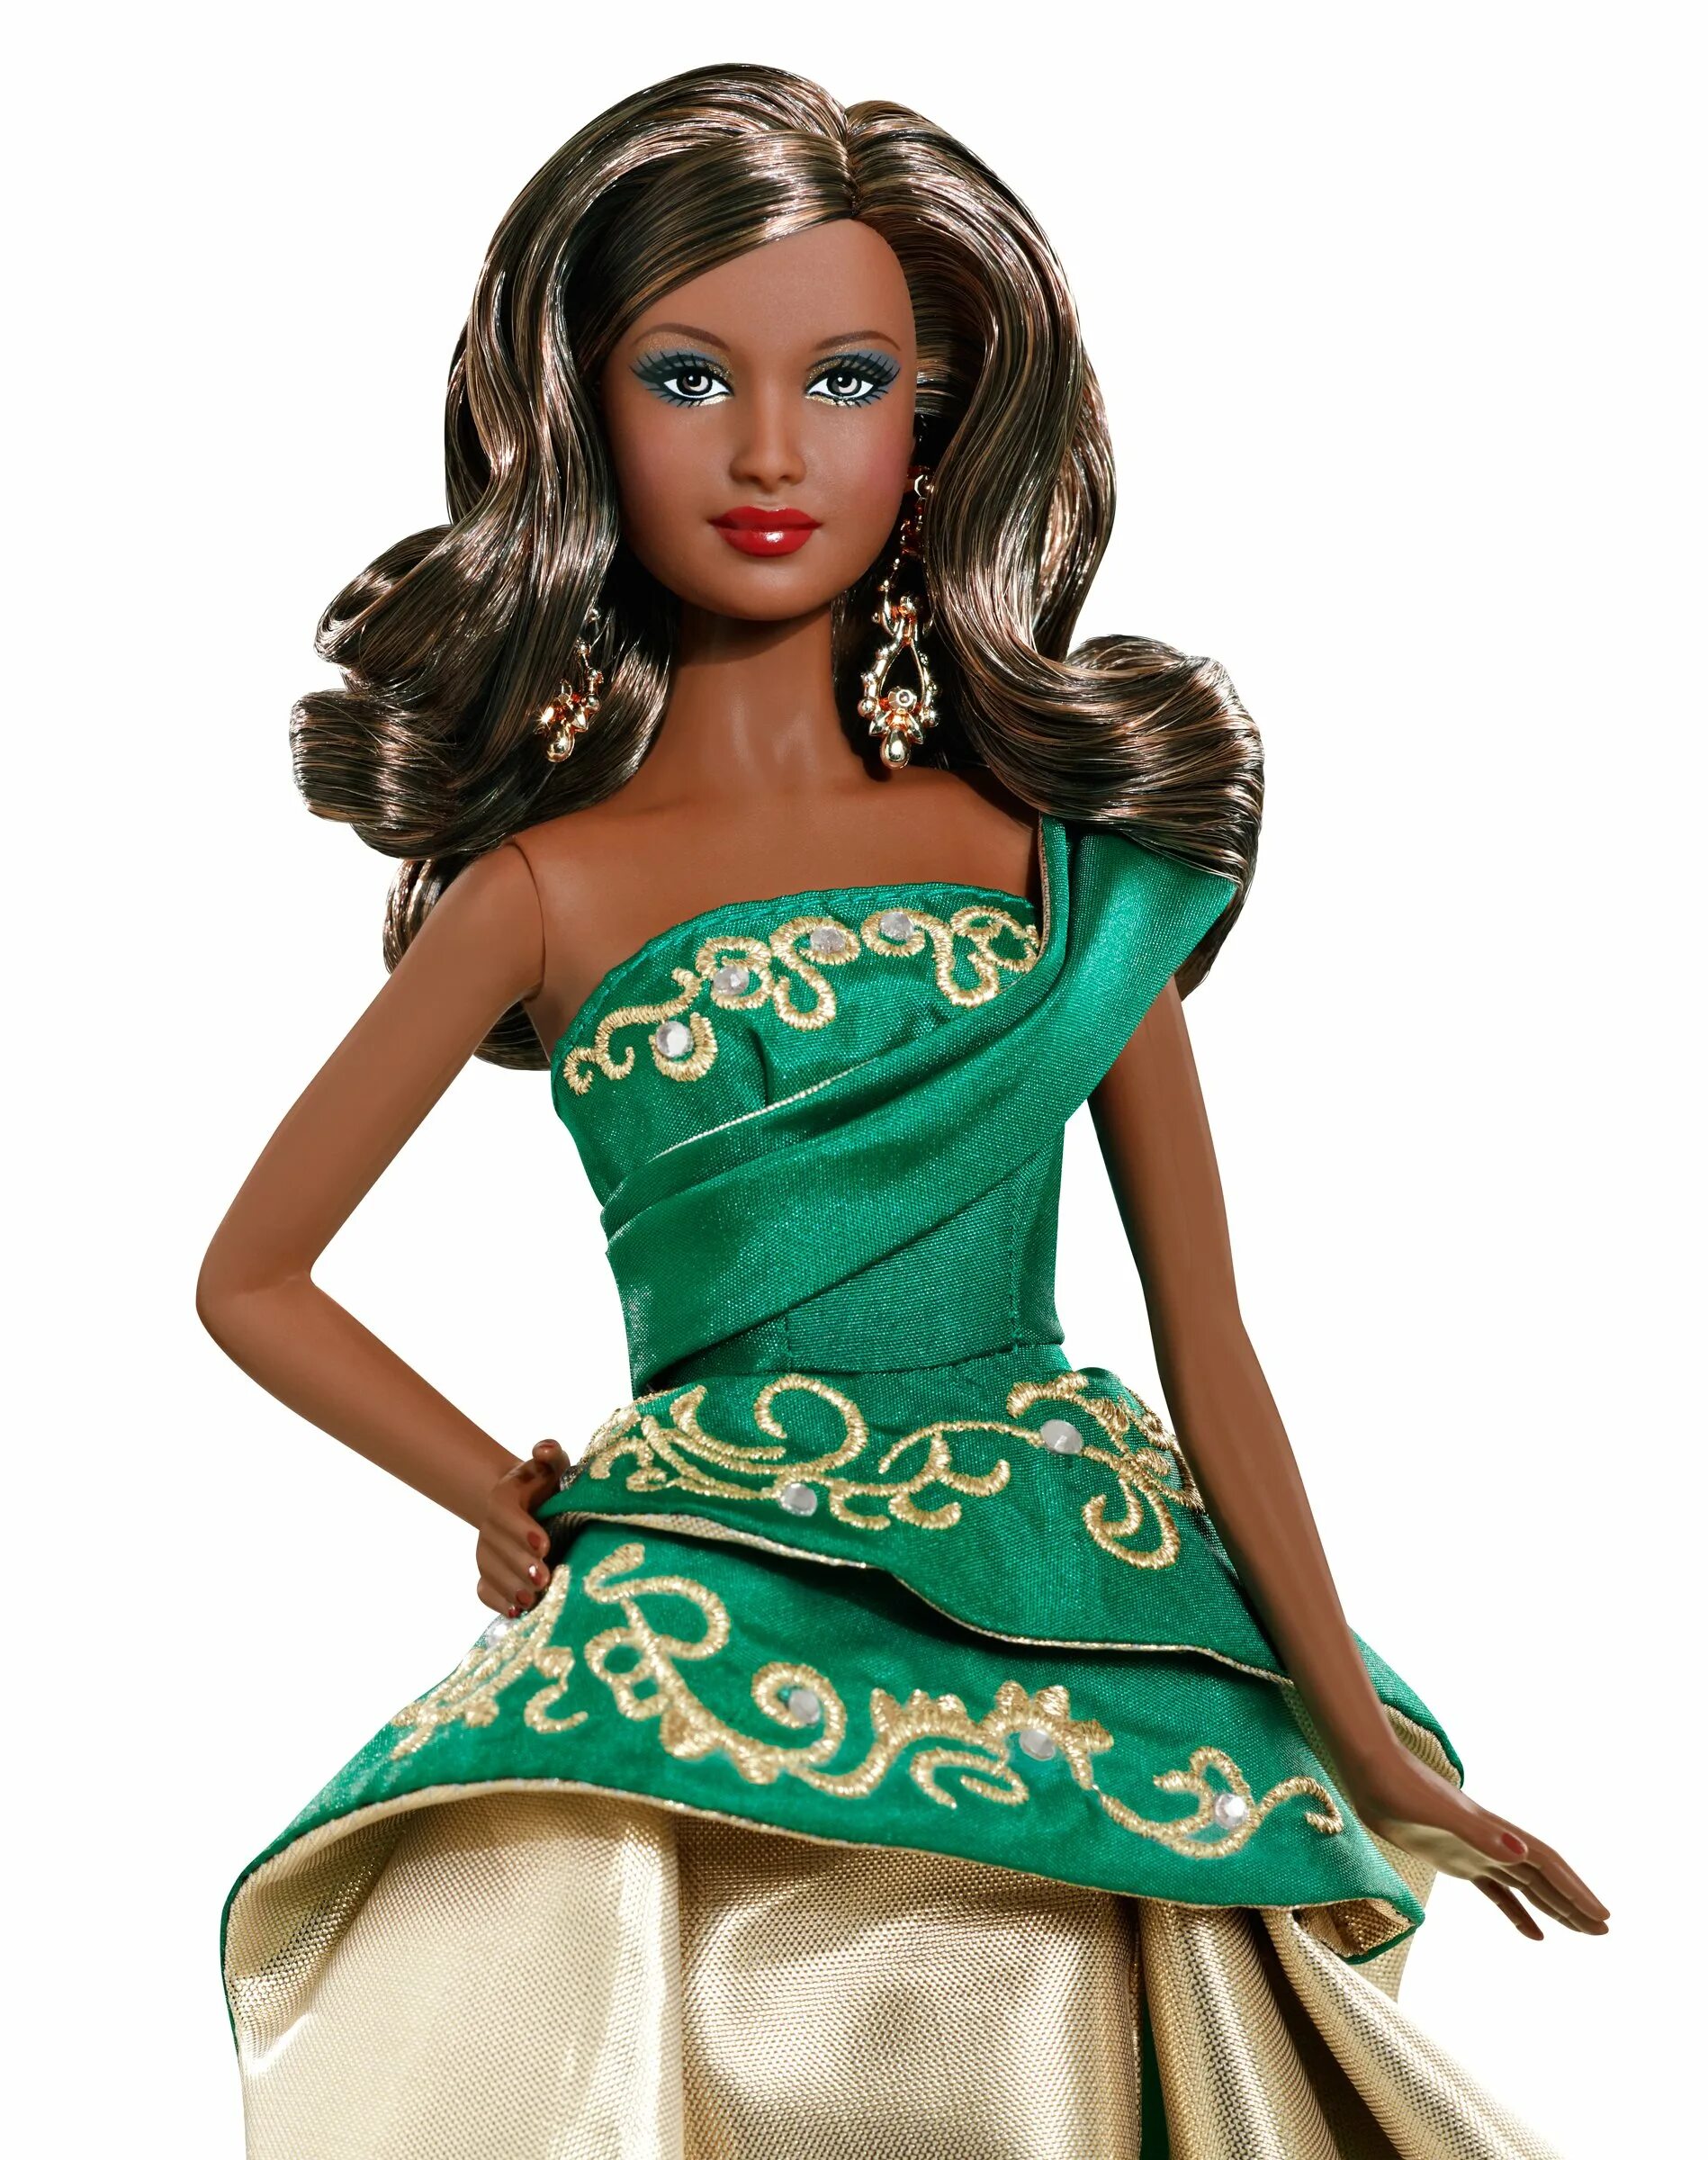 Кукла Барби Холидей. Барби Холидей 2011. Барби коллекционные куклы Холидей. Барби Холидей 2009. Barbie collections